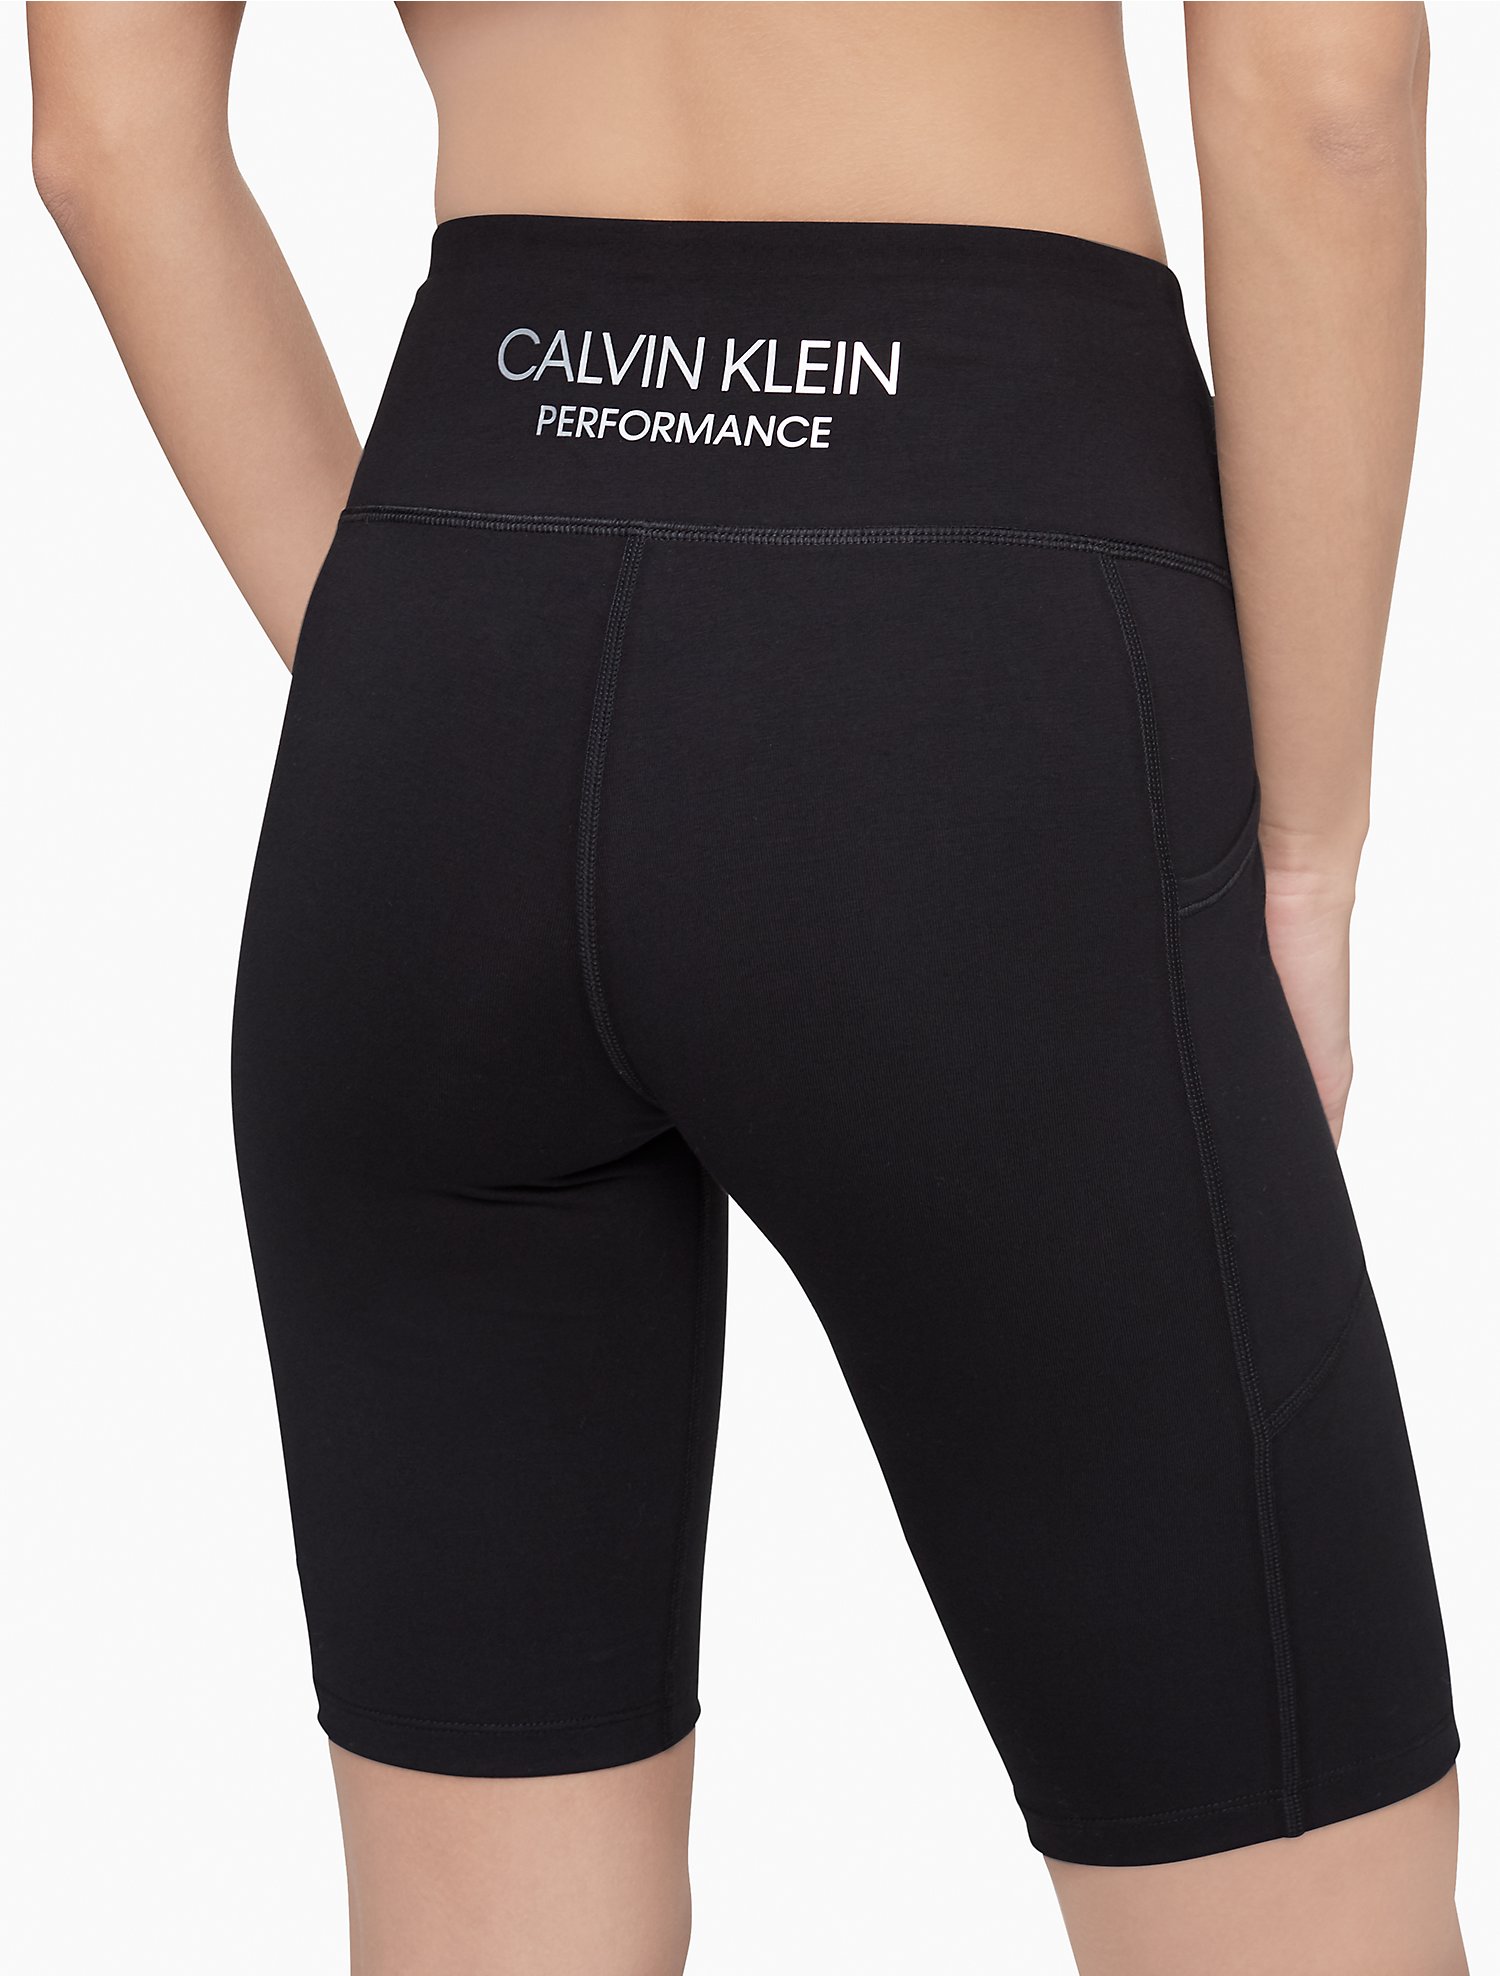 sold out | Calvin Klein® USA